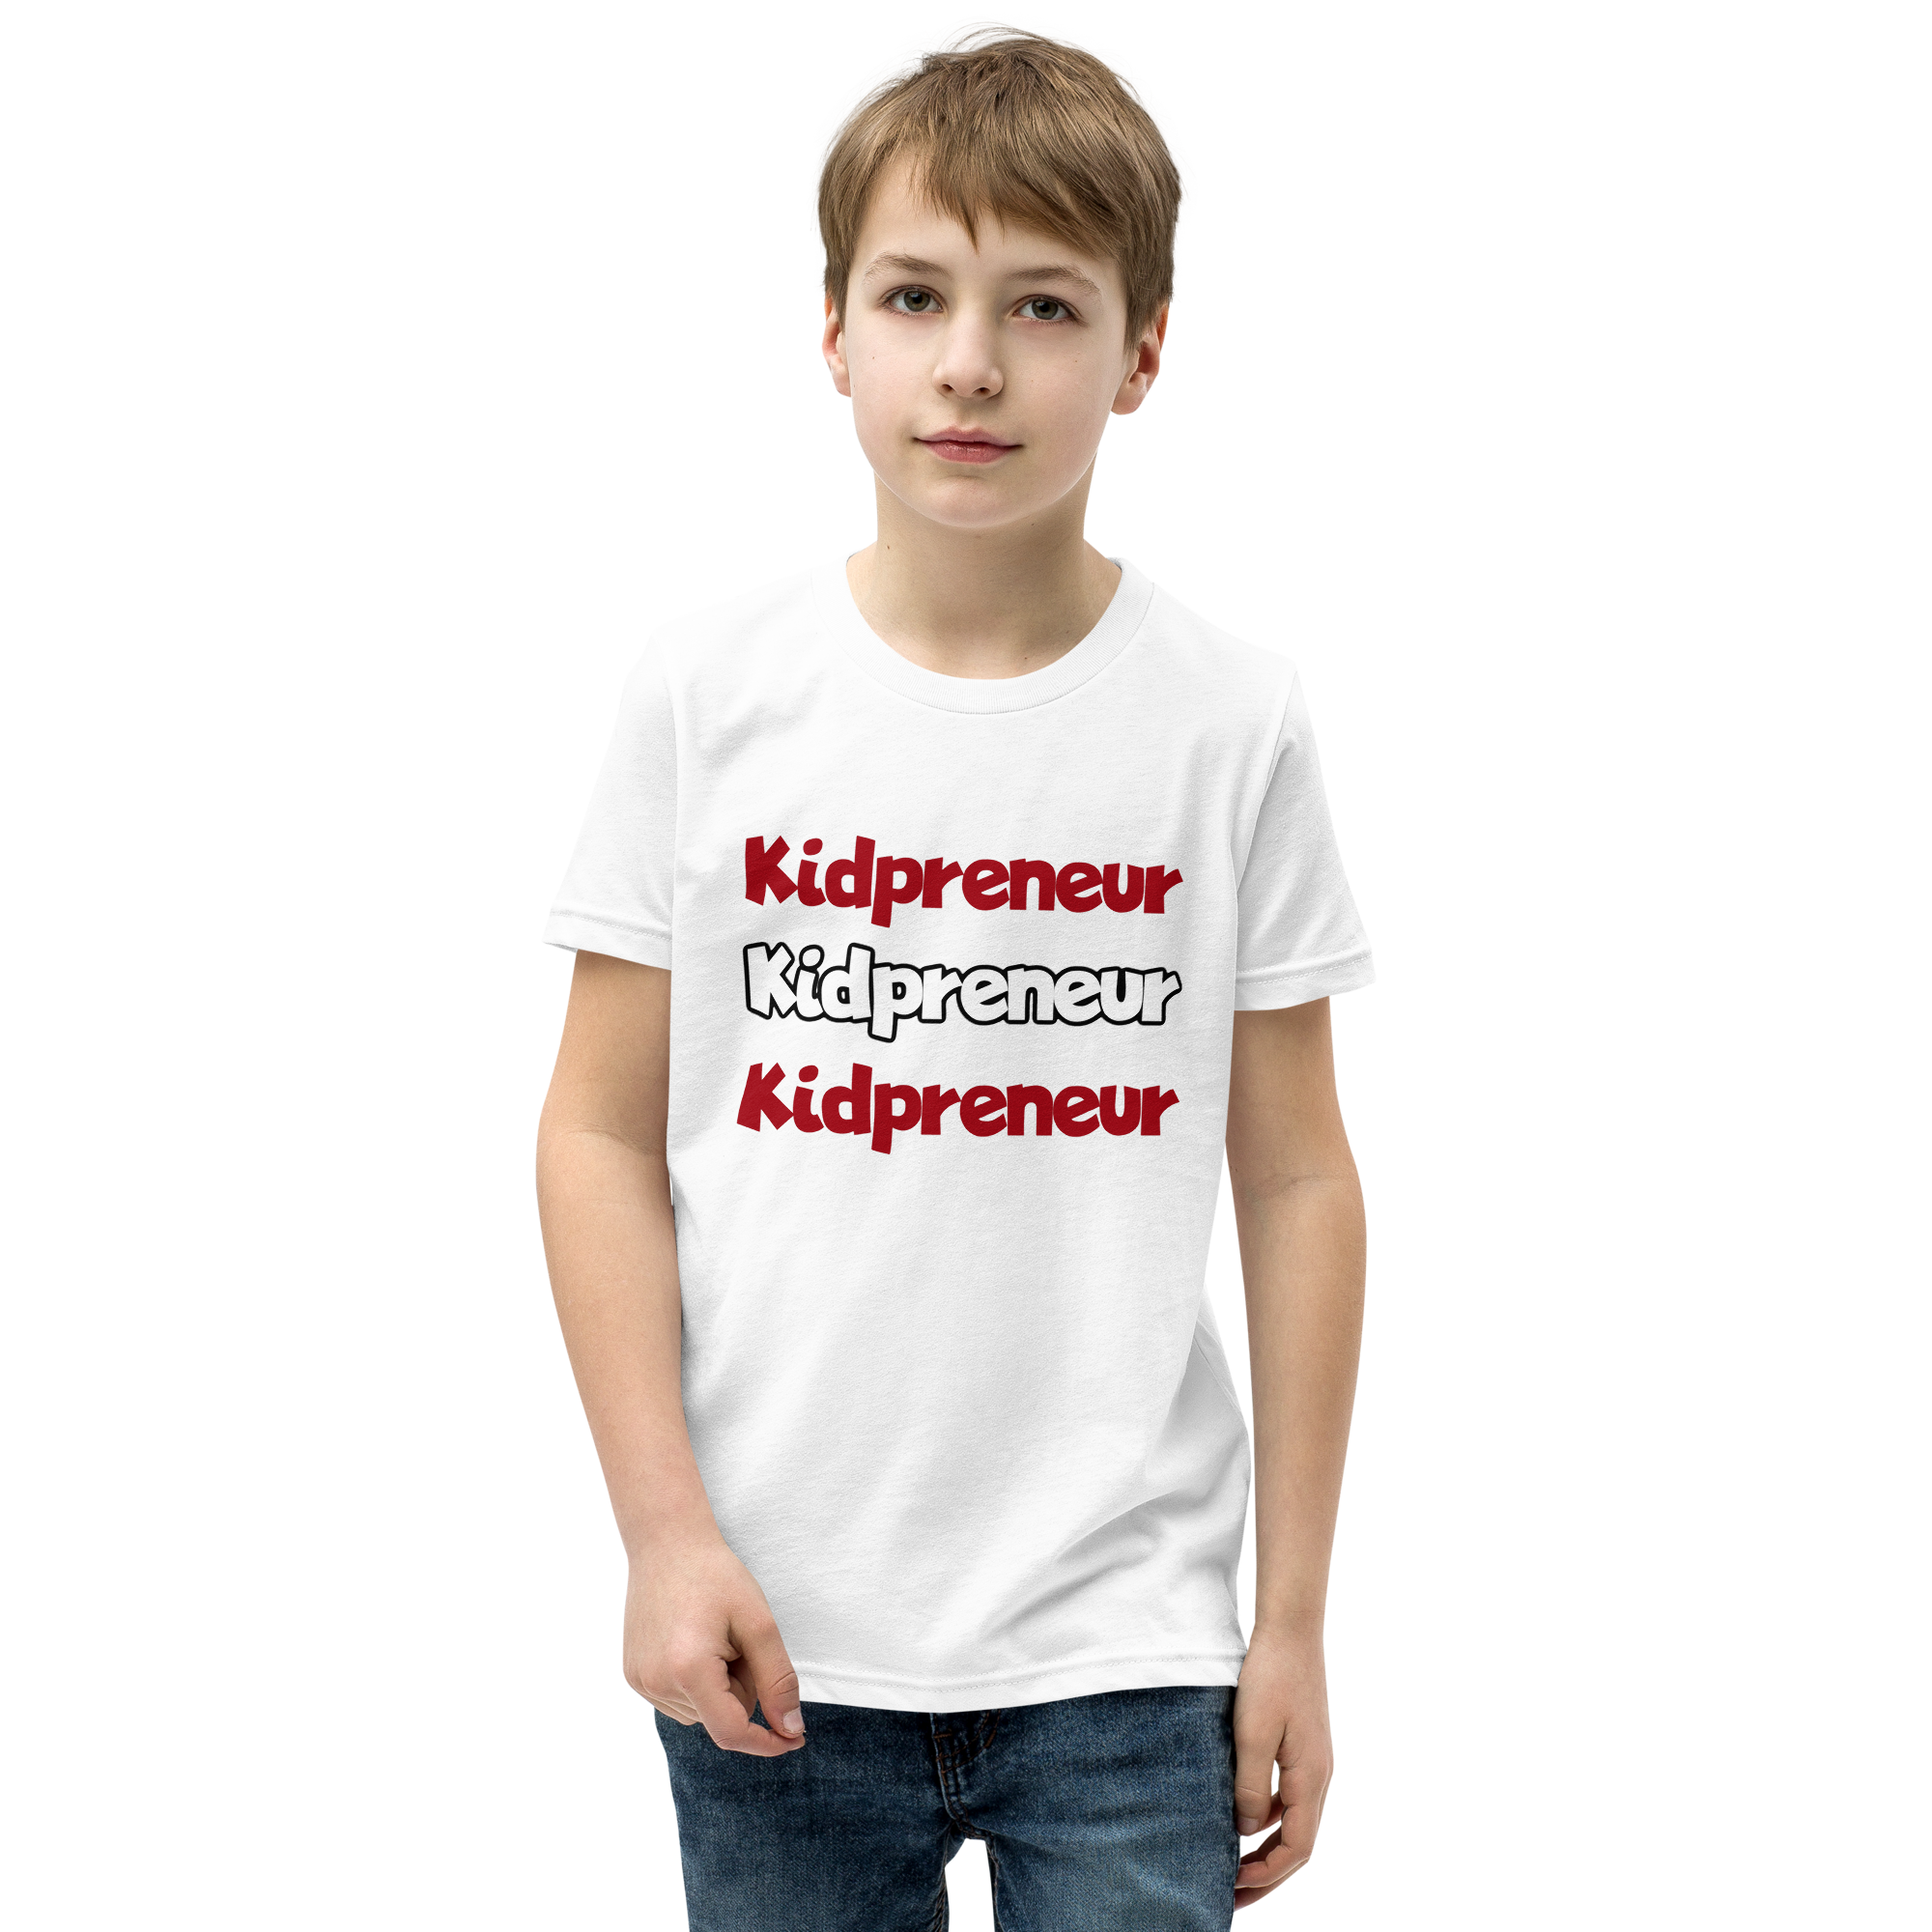 Kidpreneur